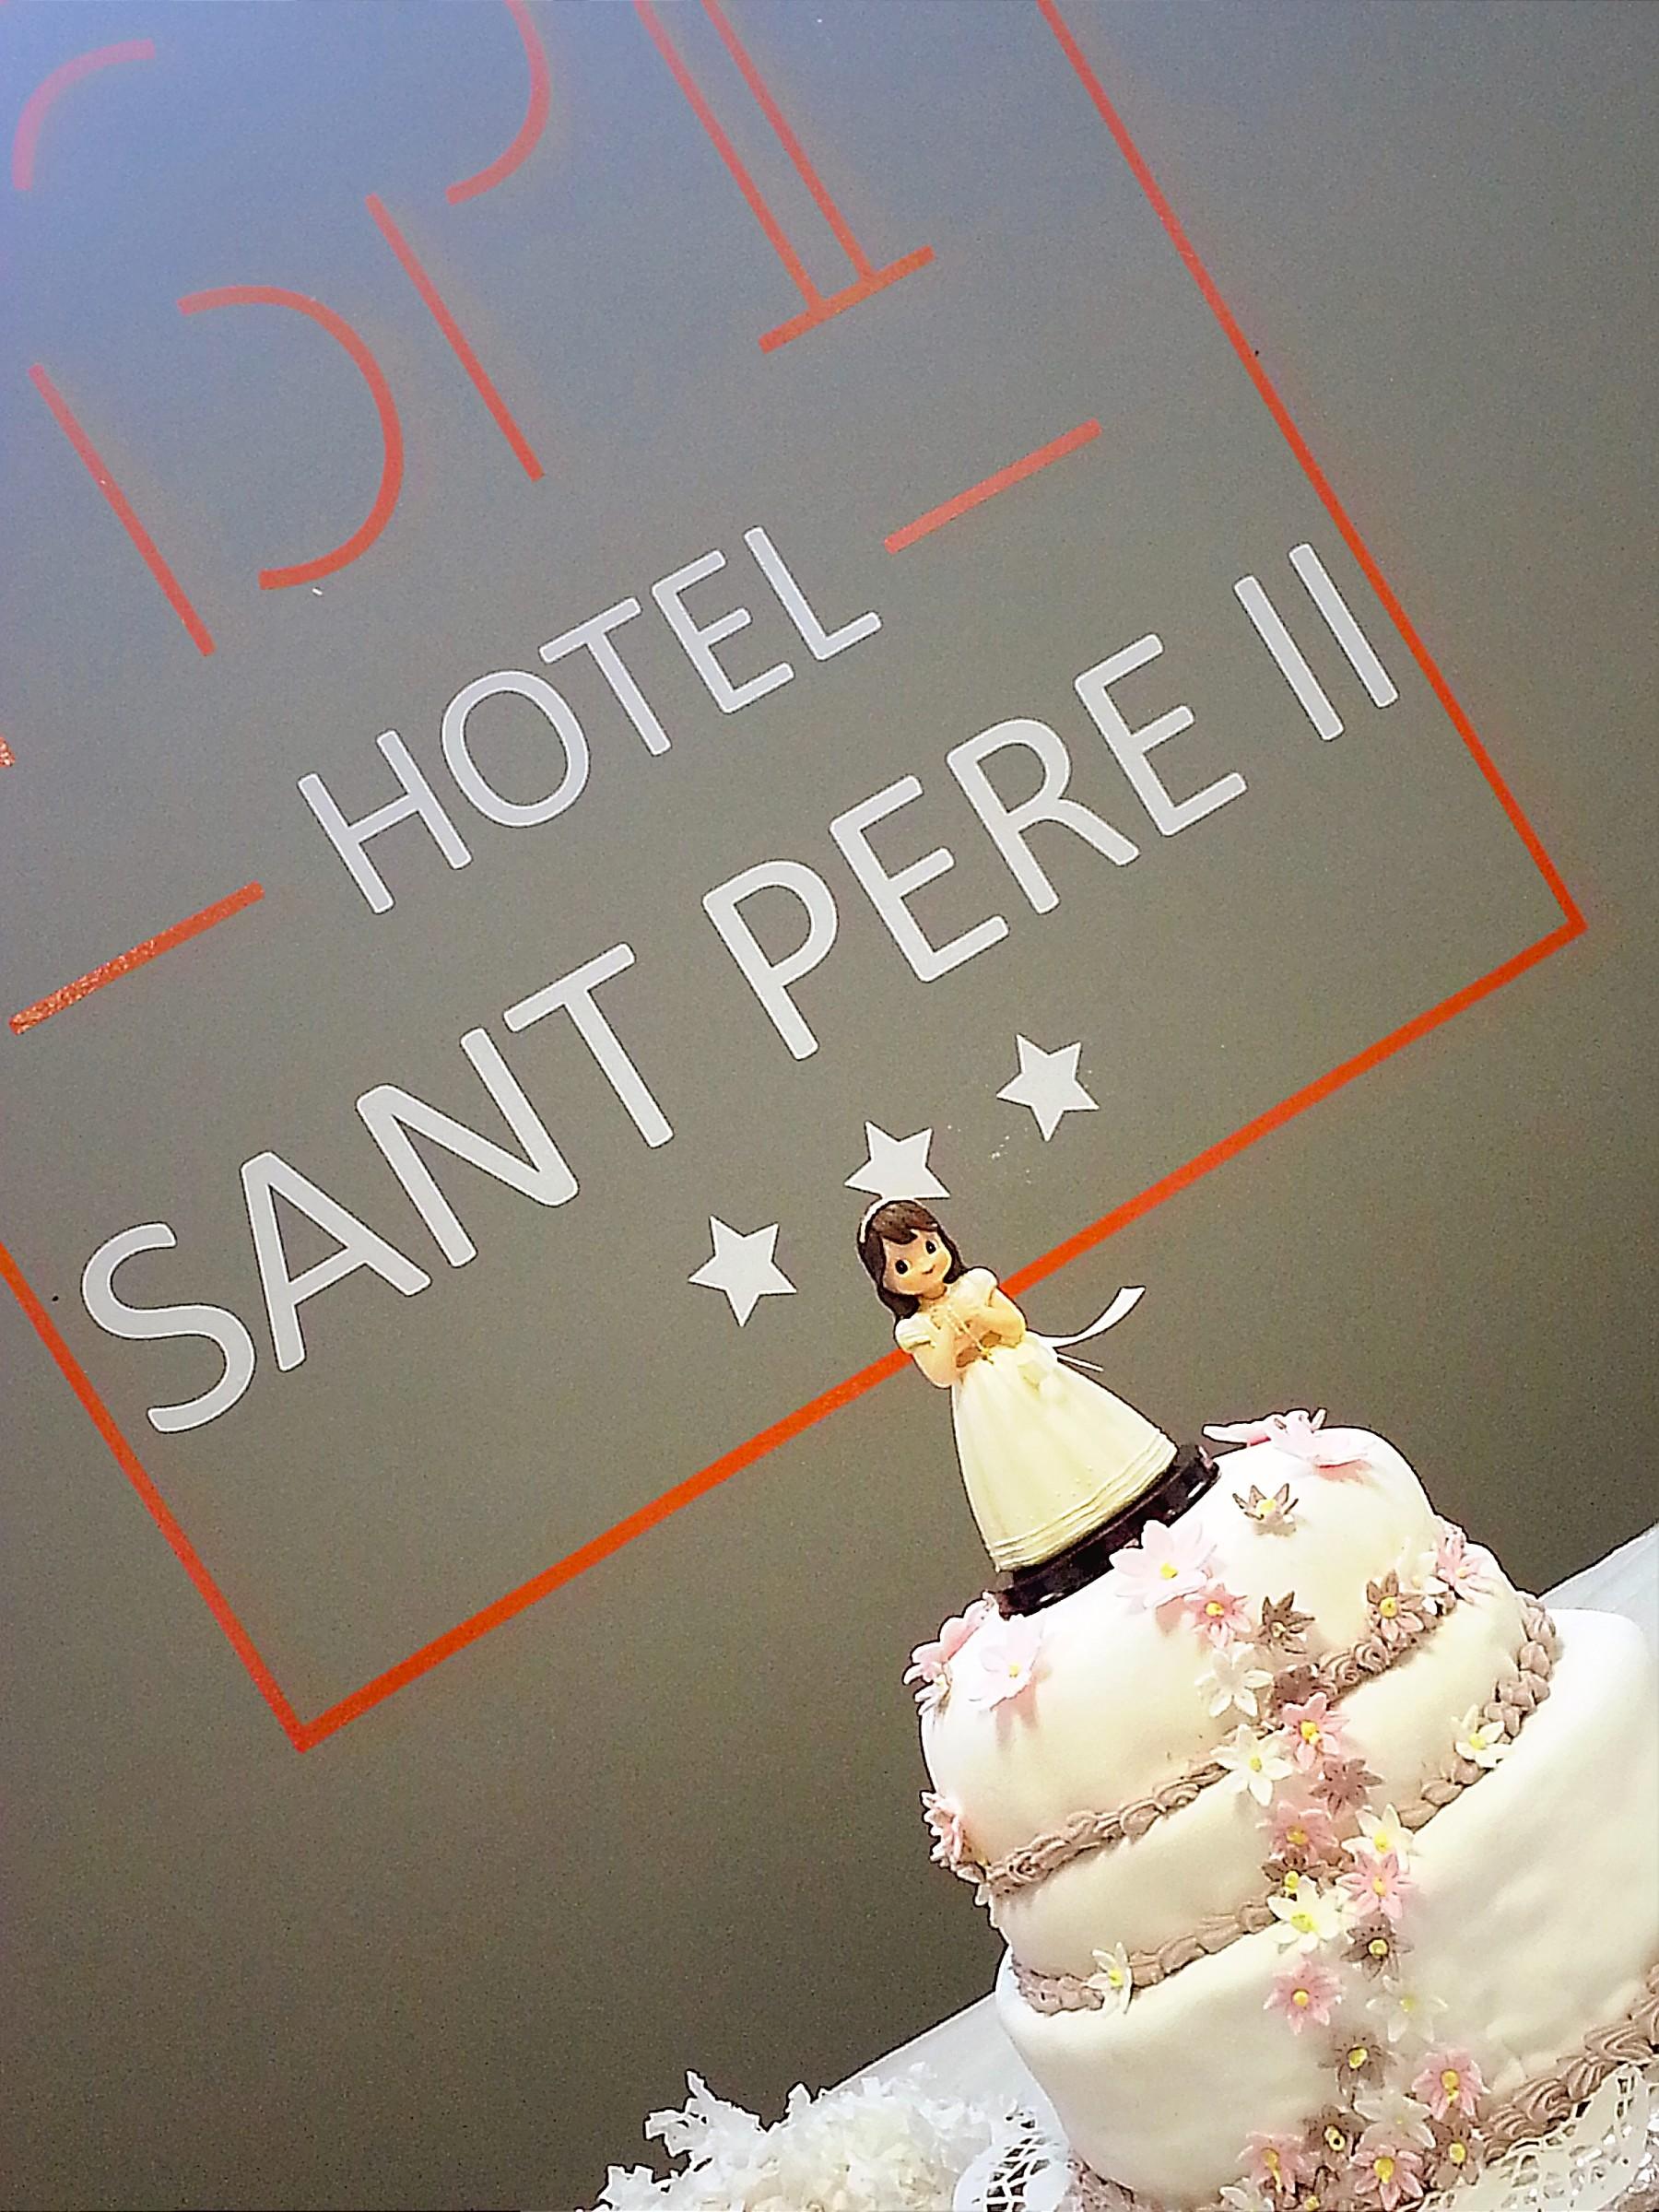 Hotel Sant Pere Ll Hspii Рубі Екстер'єр фото